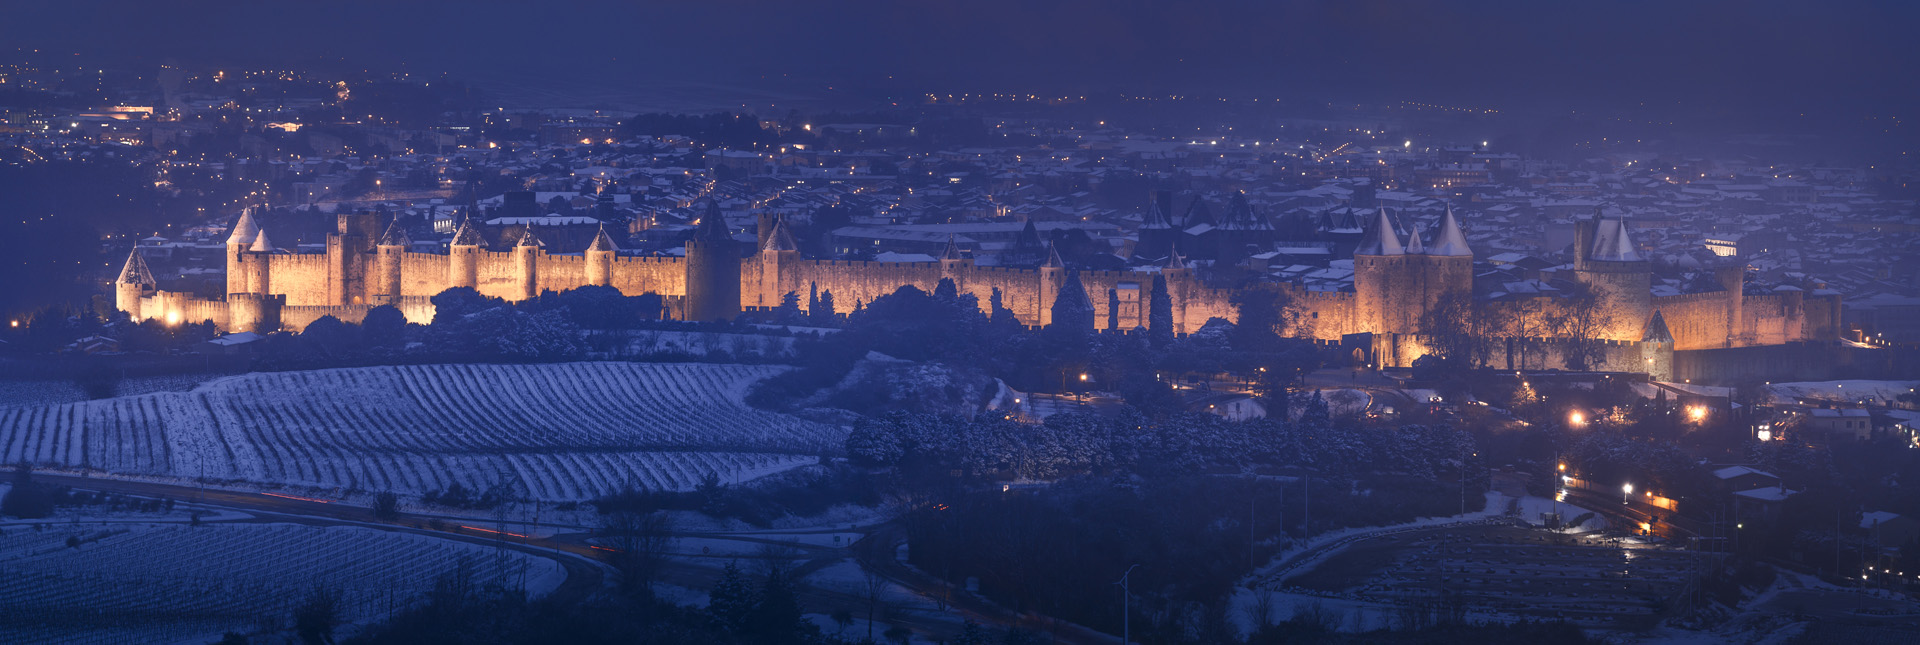 Vue de la cité médiévale de Carcassonne enneigée